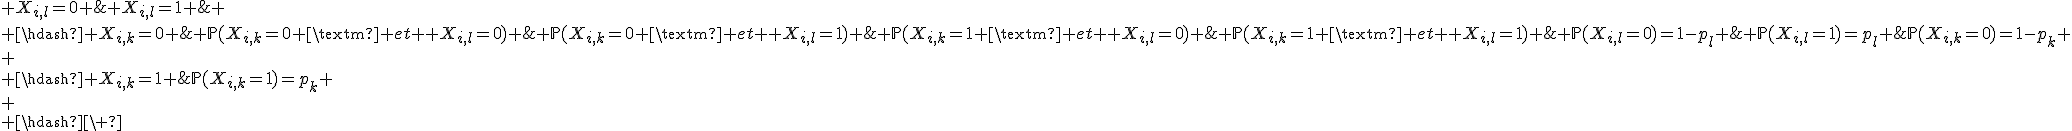 4$\array{.c.c.c.c.5BCCC$\hdash~\ & X_{i,l}=0 & X_{i,l}=1 & \\ \hdash X_{i,k}=0 & \mathbb{P}(X_{i,k}=0 \mbox{ et } X_{i,l}=0) & \mathbb{P}(X_{i,k}=0 \mbox{ et } X_{i,l}=1) &\mathbb{P}(X_{i,k}=0)=1-p_k \\
 \\ \hdash X_{i,k}=1 & \mathbb{P}(X_{i,k}=1 \mbox{ et } X_{i,l}=0) & \mathbb{P}(X_{i,k}=1 \mbox{ et } X_{i,l}=1) &\mathbb{P}(X_{i,k}=1)=p_k \\
 \\ \hdash~\ & \mathbb{P}(X_{i,l}=0)=1-p_l & \mathbb{P}(X_{i,l}=1)=p_l & \\ \hdash~}